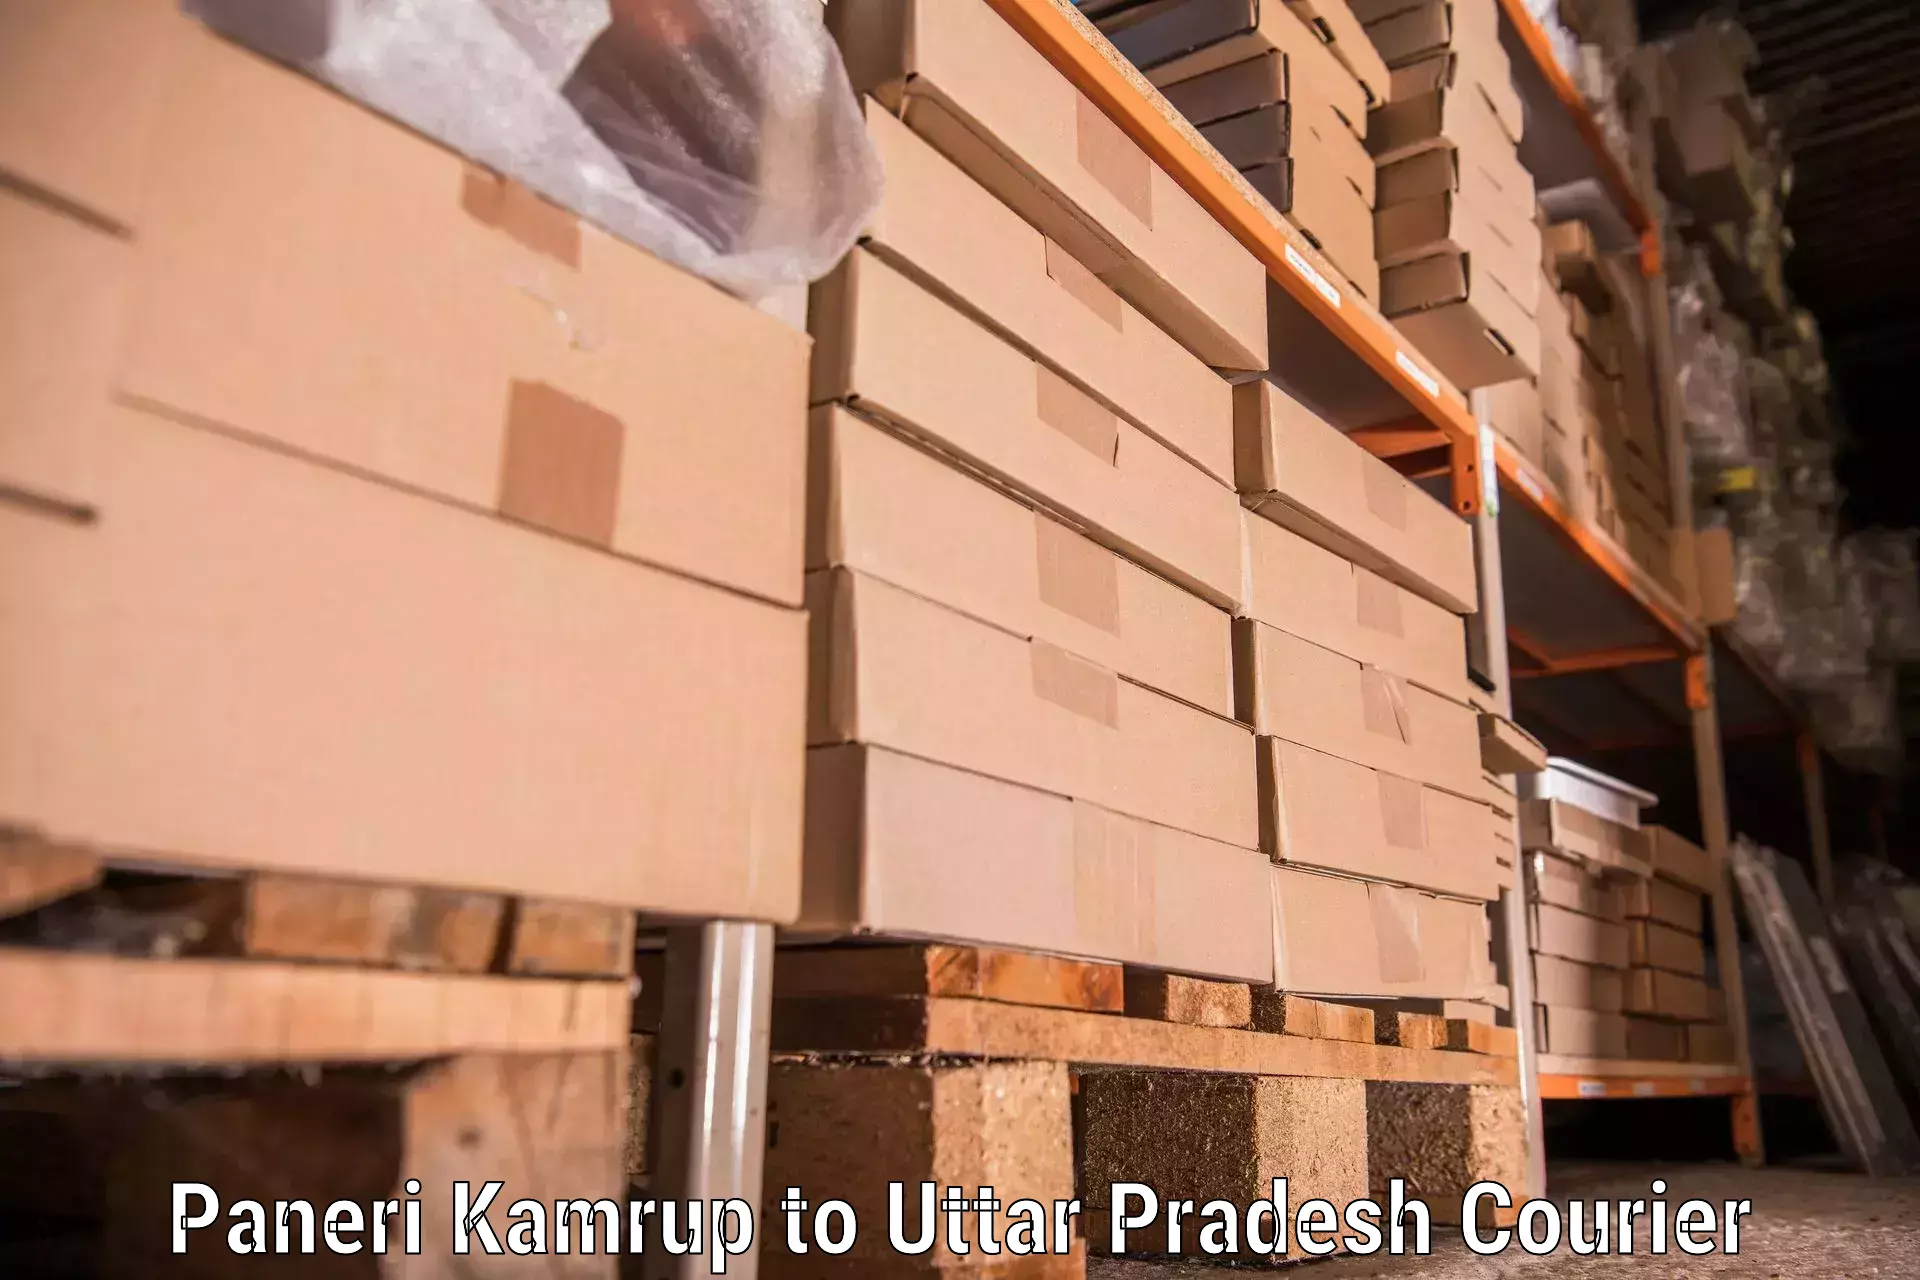 Furniture moving service Paneri Kamrup to Vrindavan